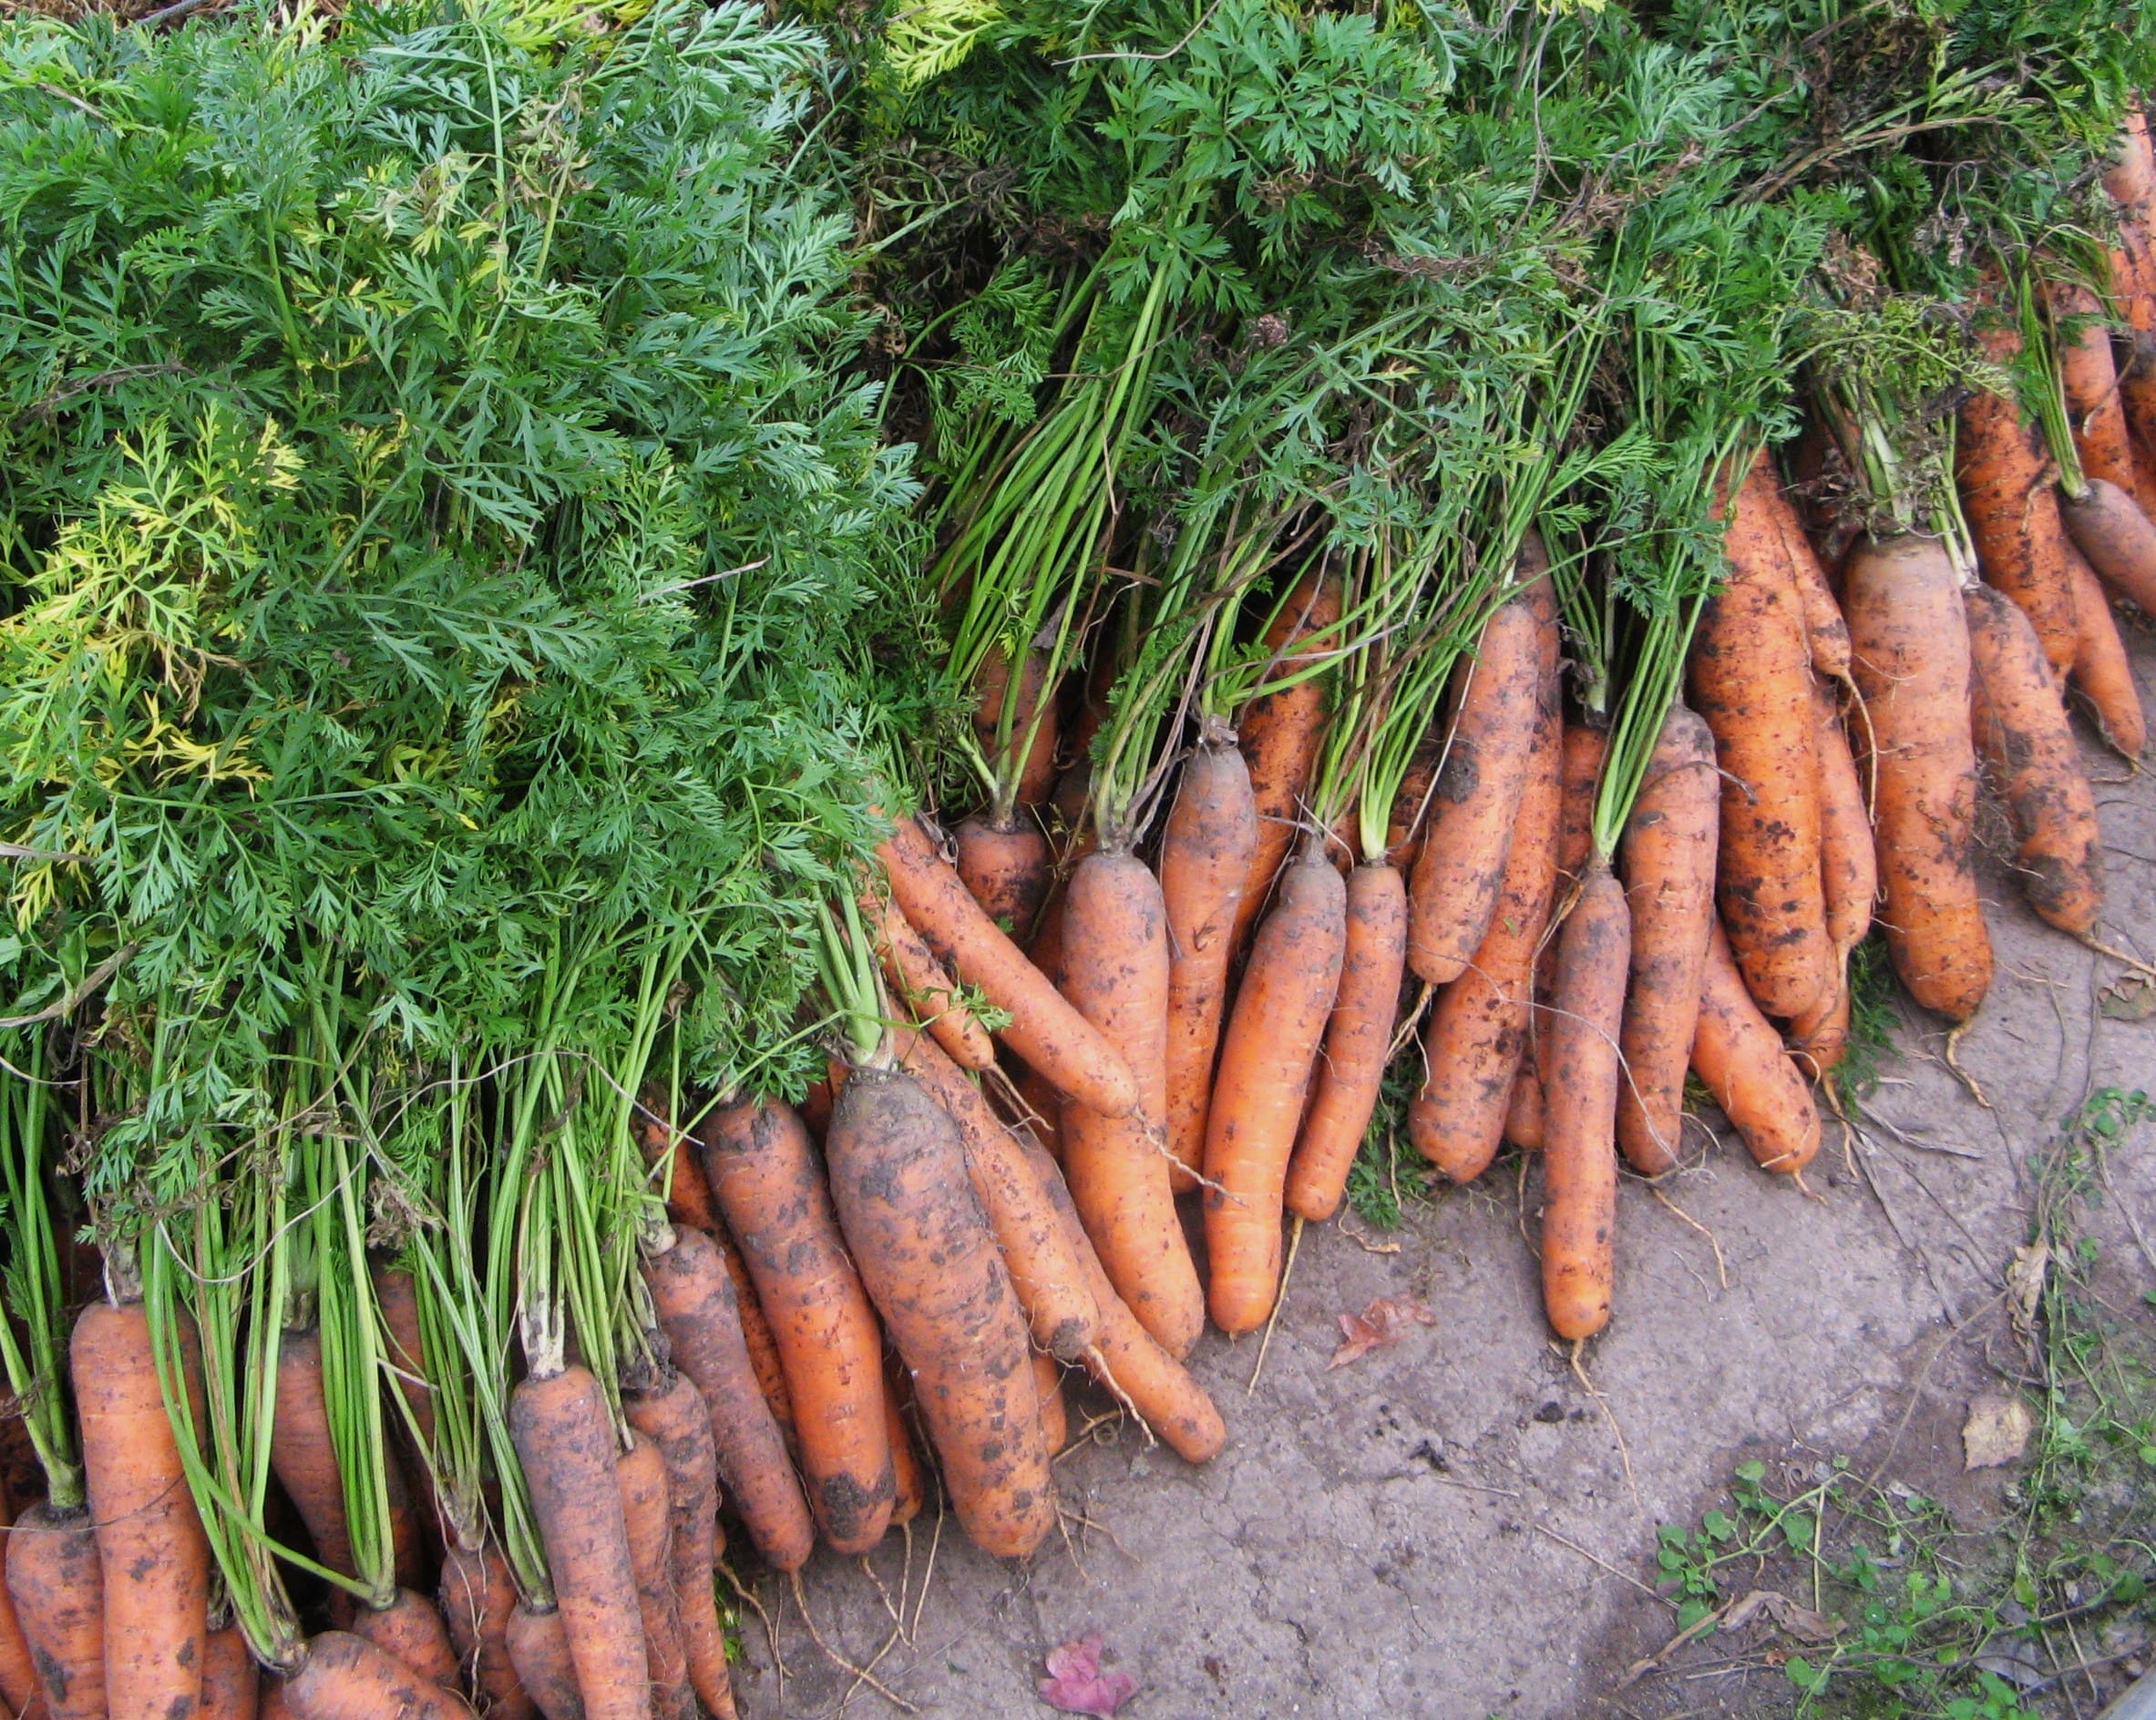  Морковь сразу же пойдёт в рост: в июле нужно полить грядки таким раствором — первый шаг к хорошему урожаю 